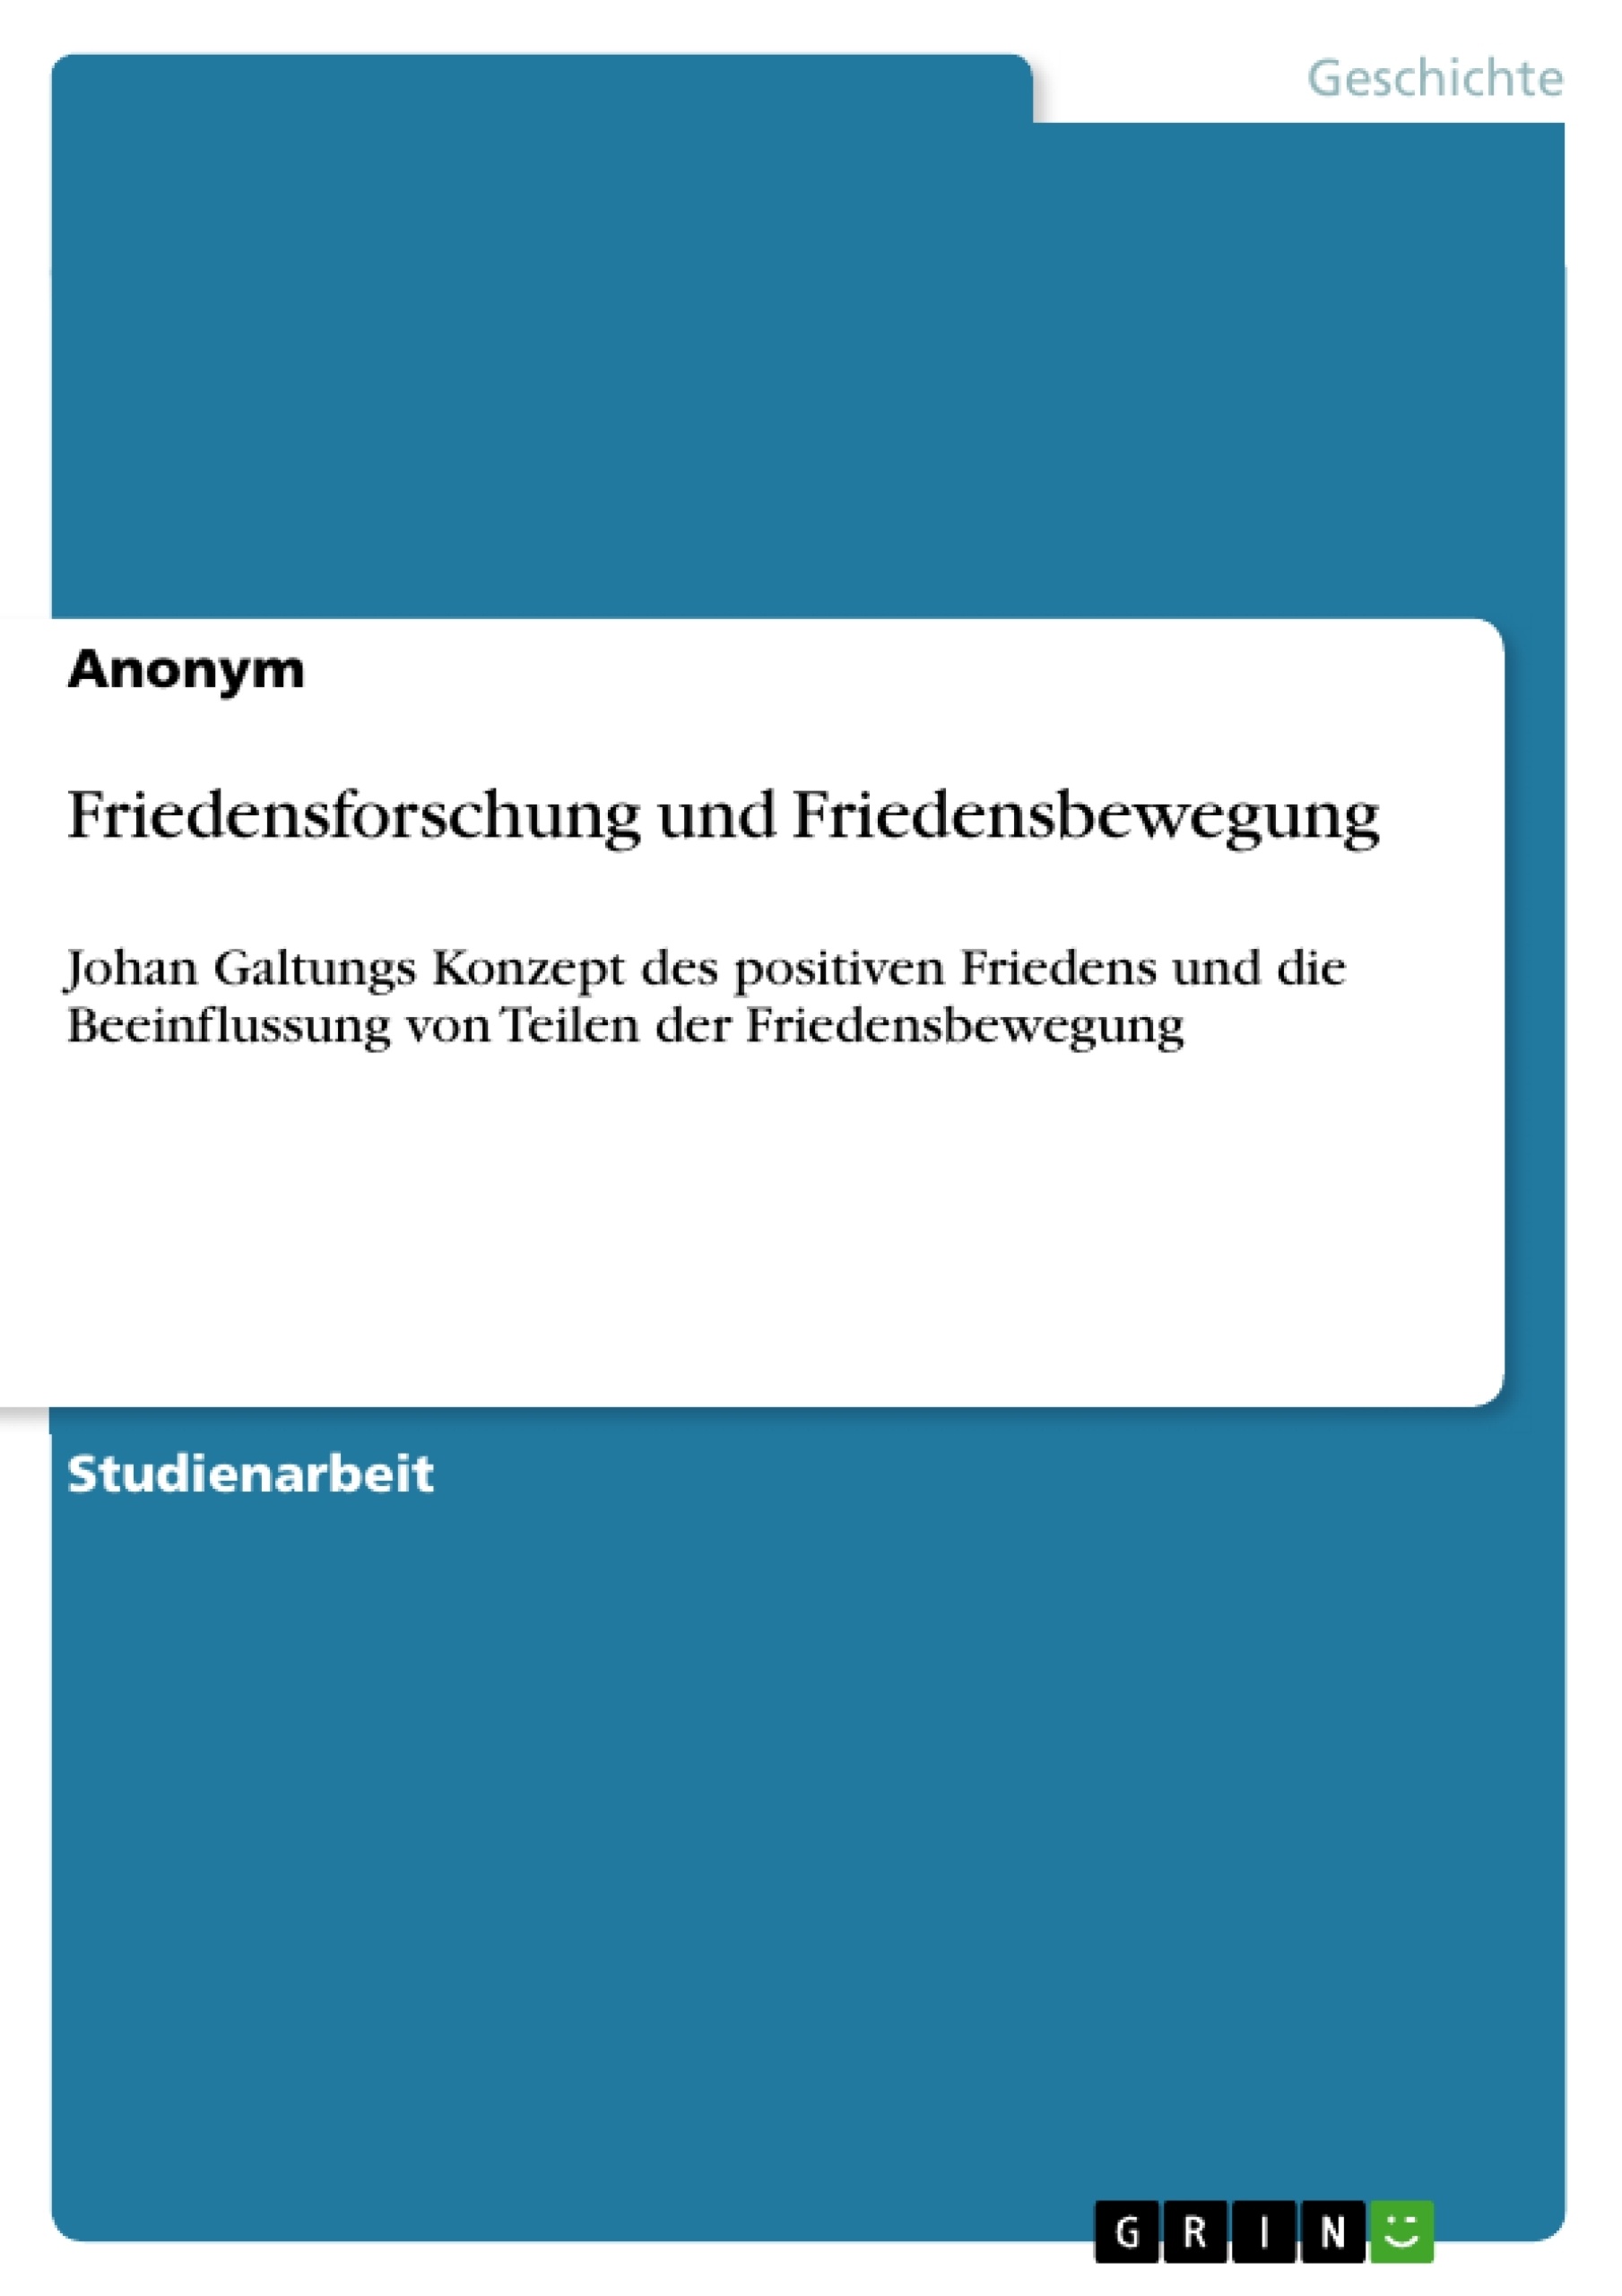 Title: Friedensforschung und Friedensbewegung 